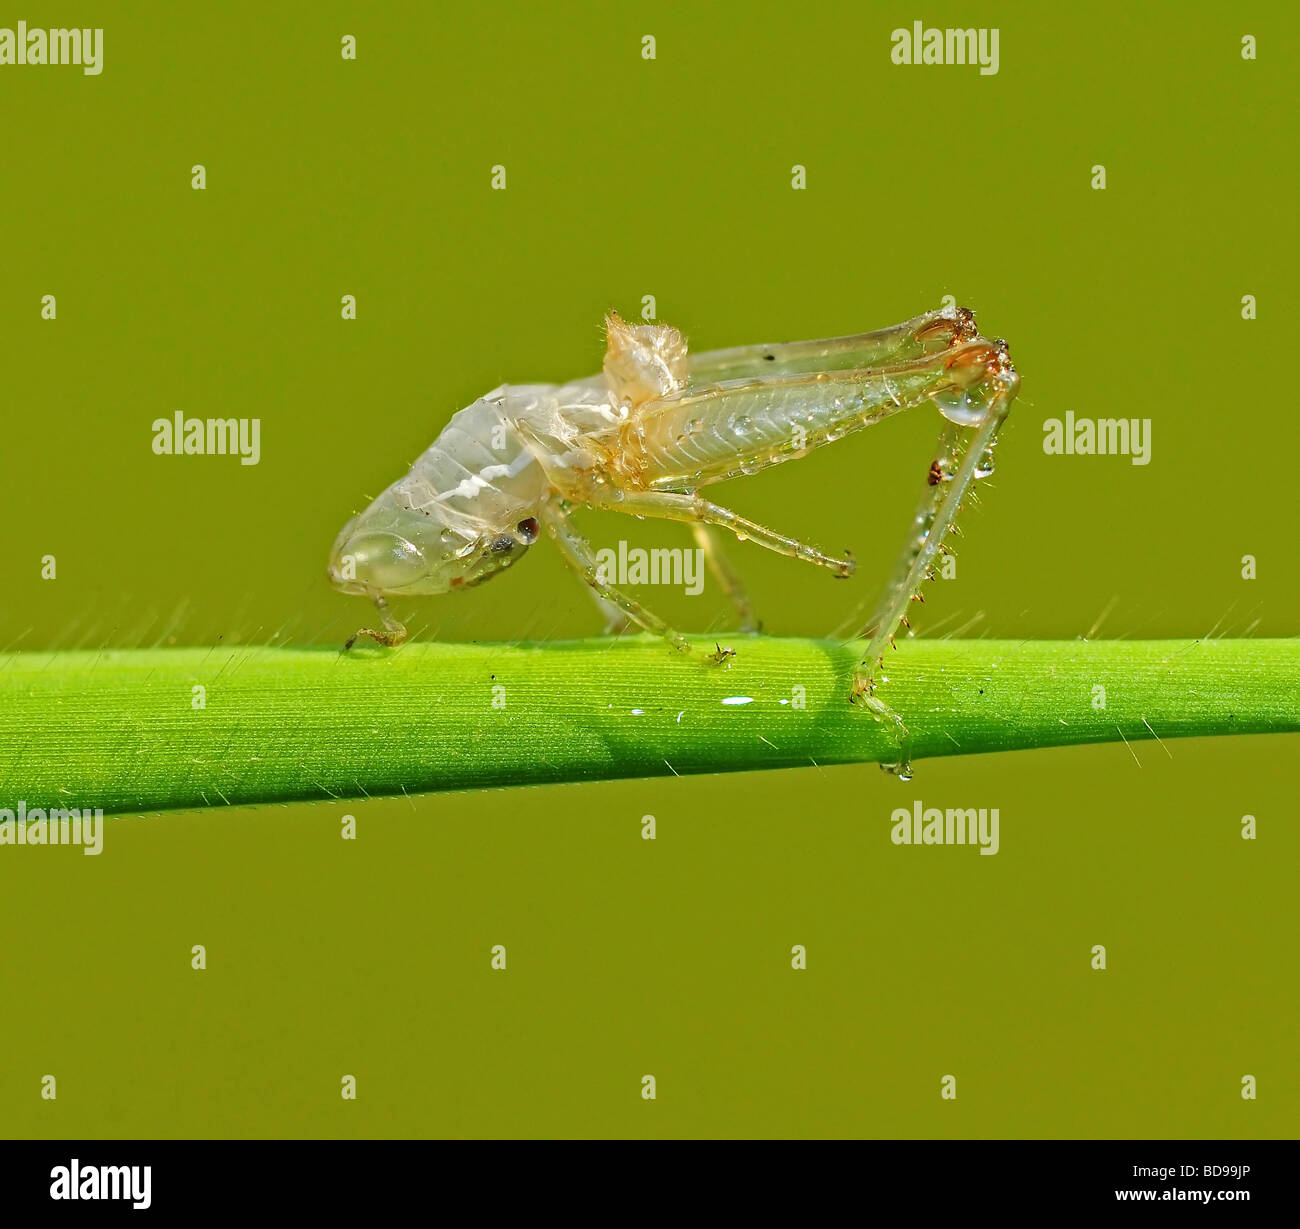 grasshopper skin in the parks Stock Photo